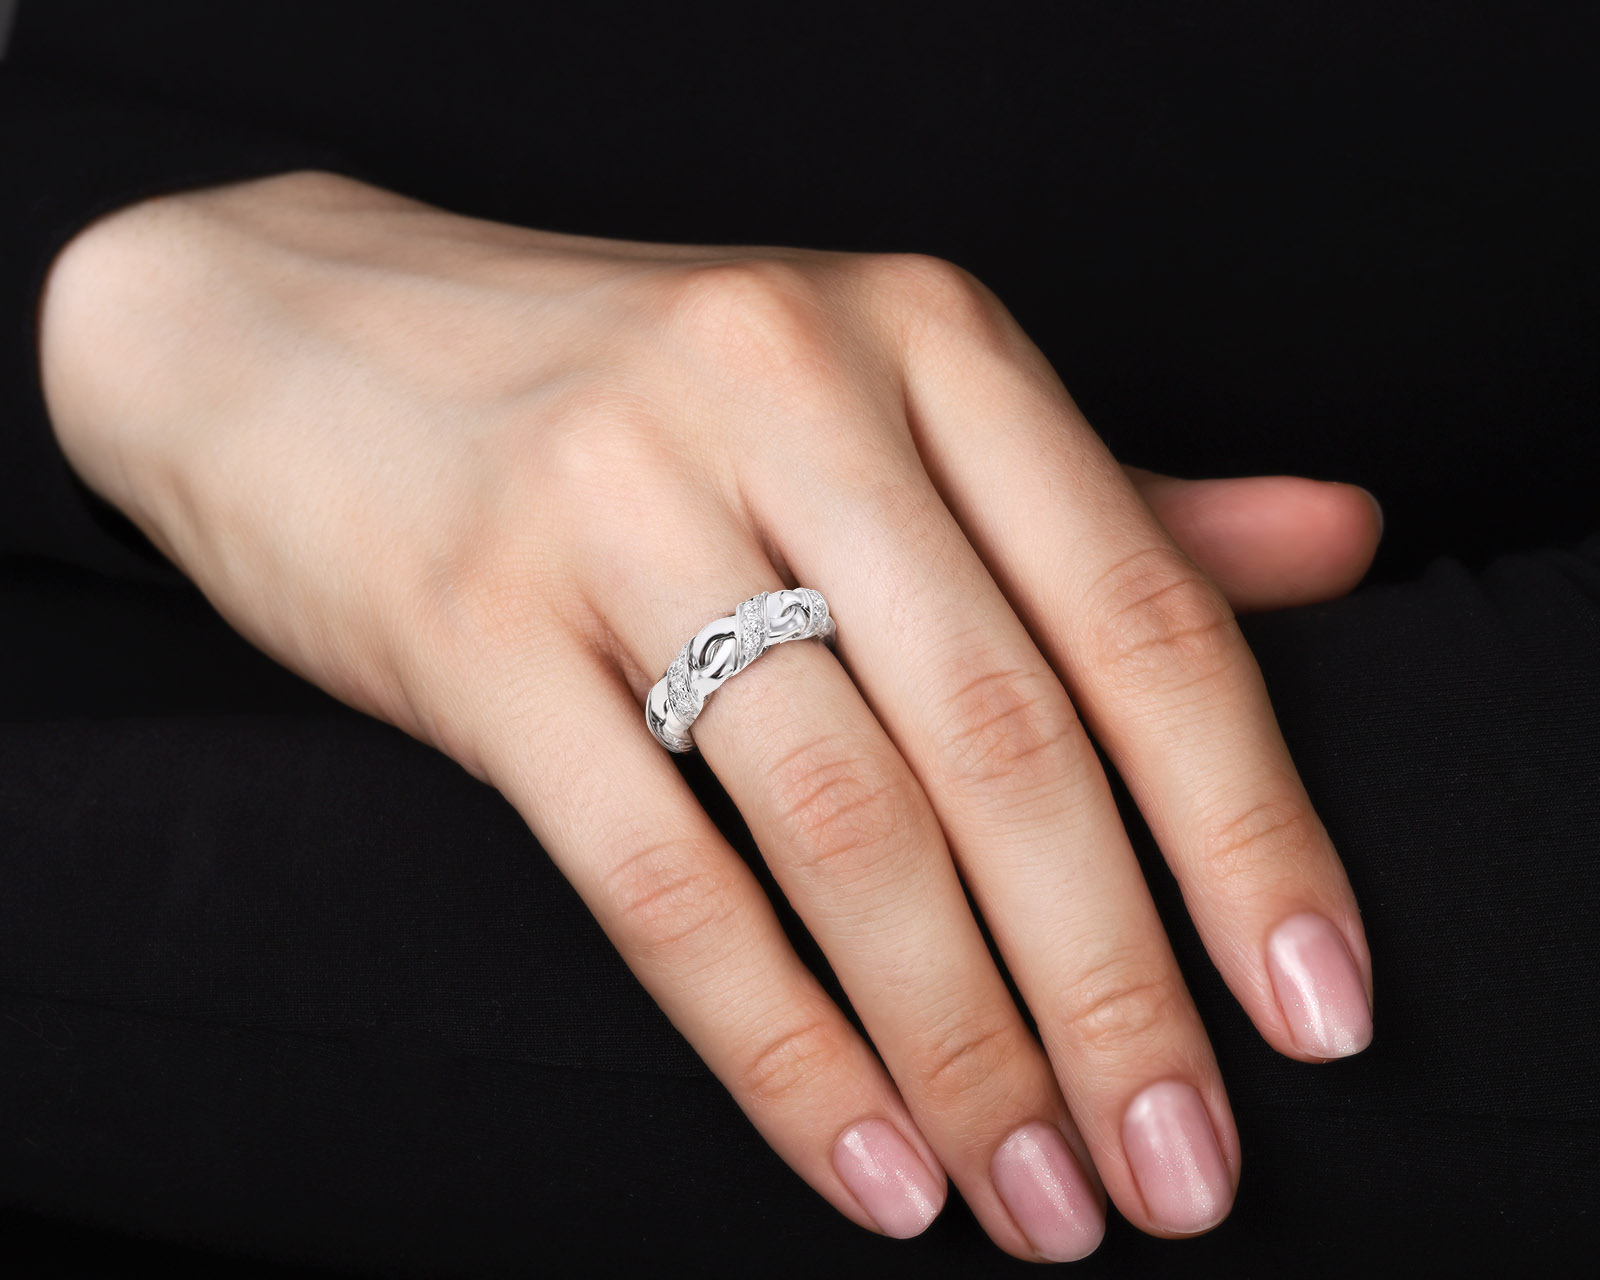 Оригинальное золотое кольцо с бриллиантами 0.30ct Chaumet